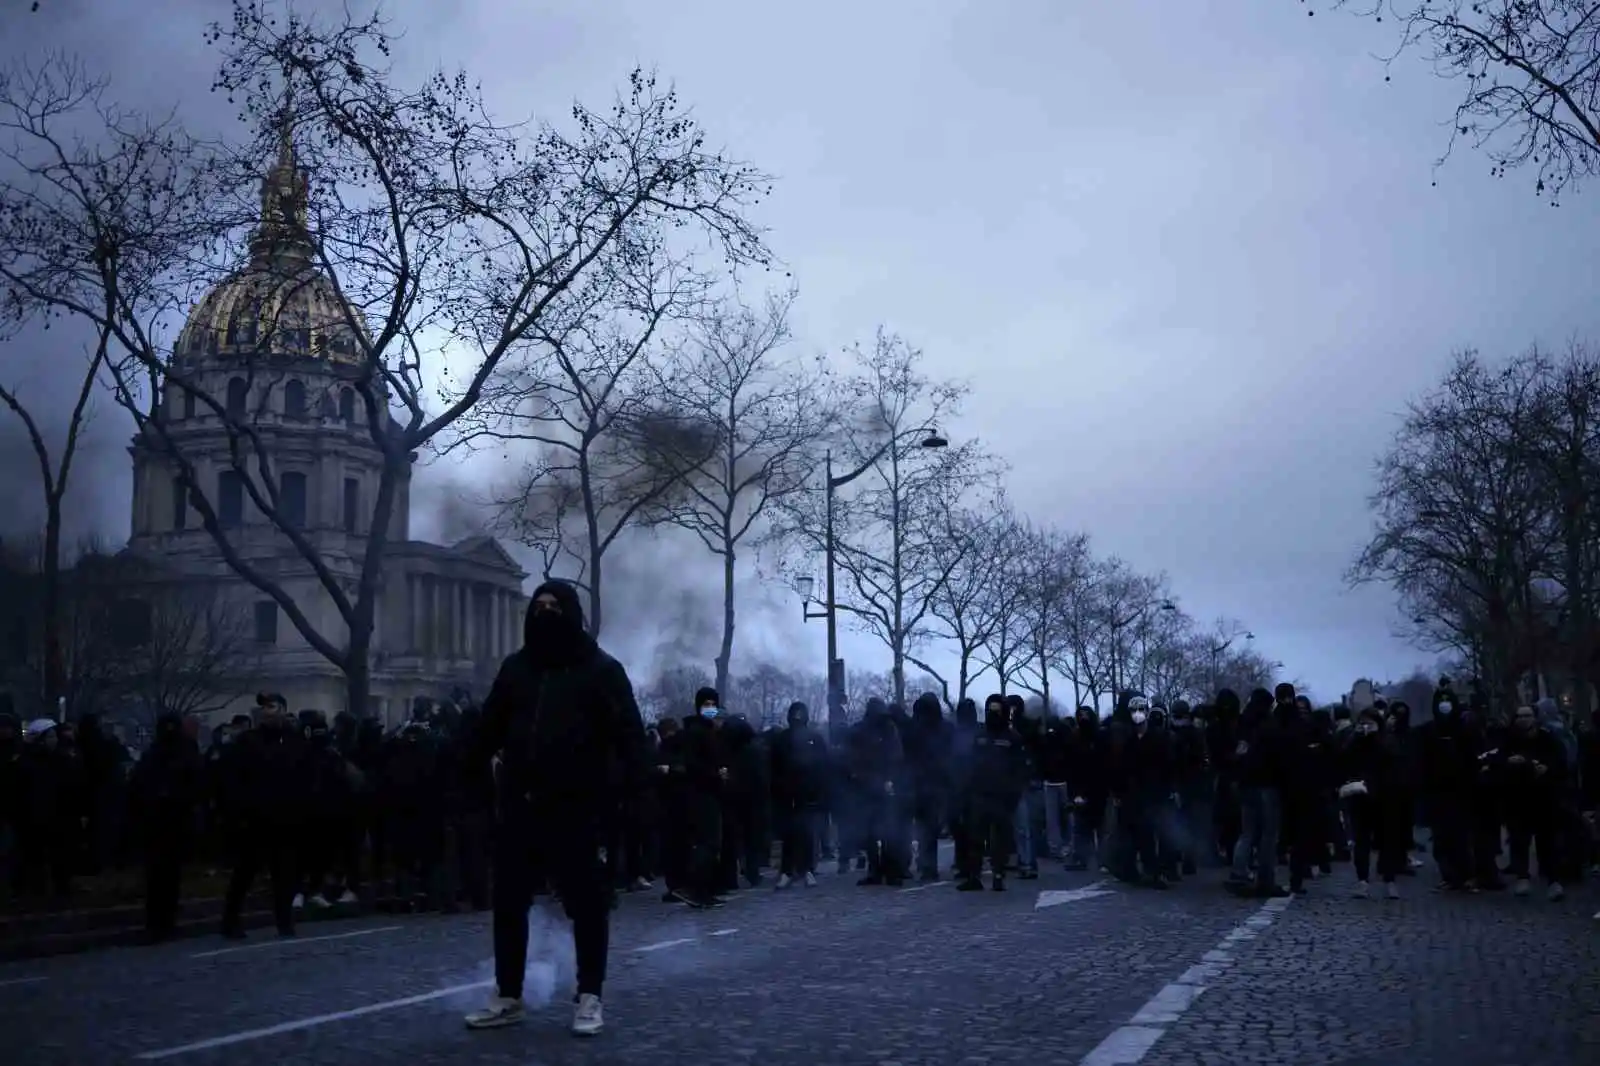 Fransa’da emeklilik reformu protestosuna gazlı müdahale: 30 gözaltı
